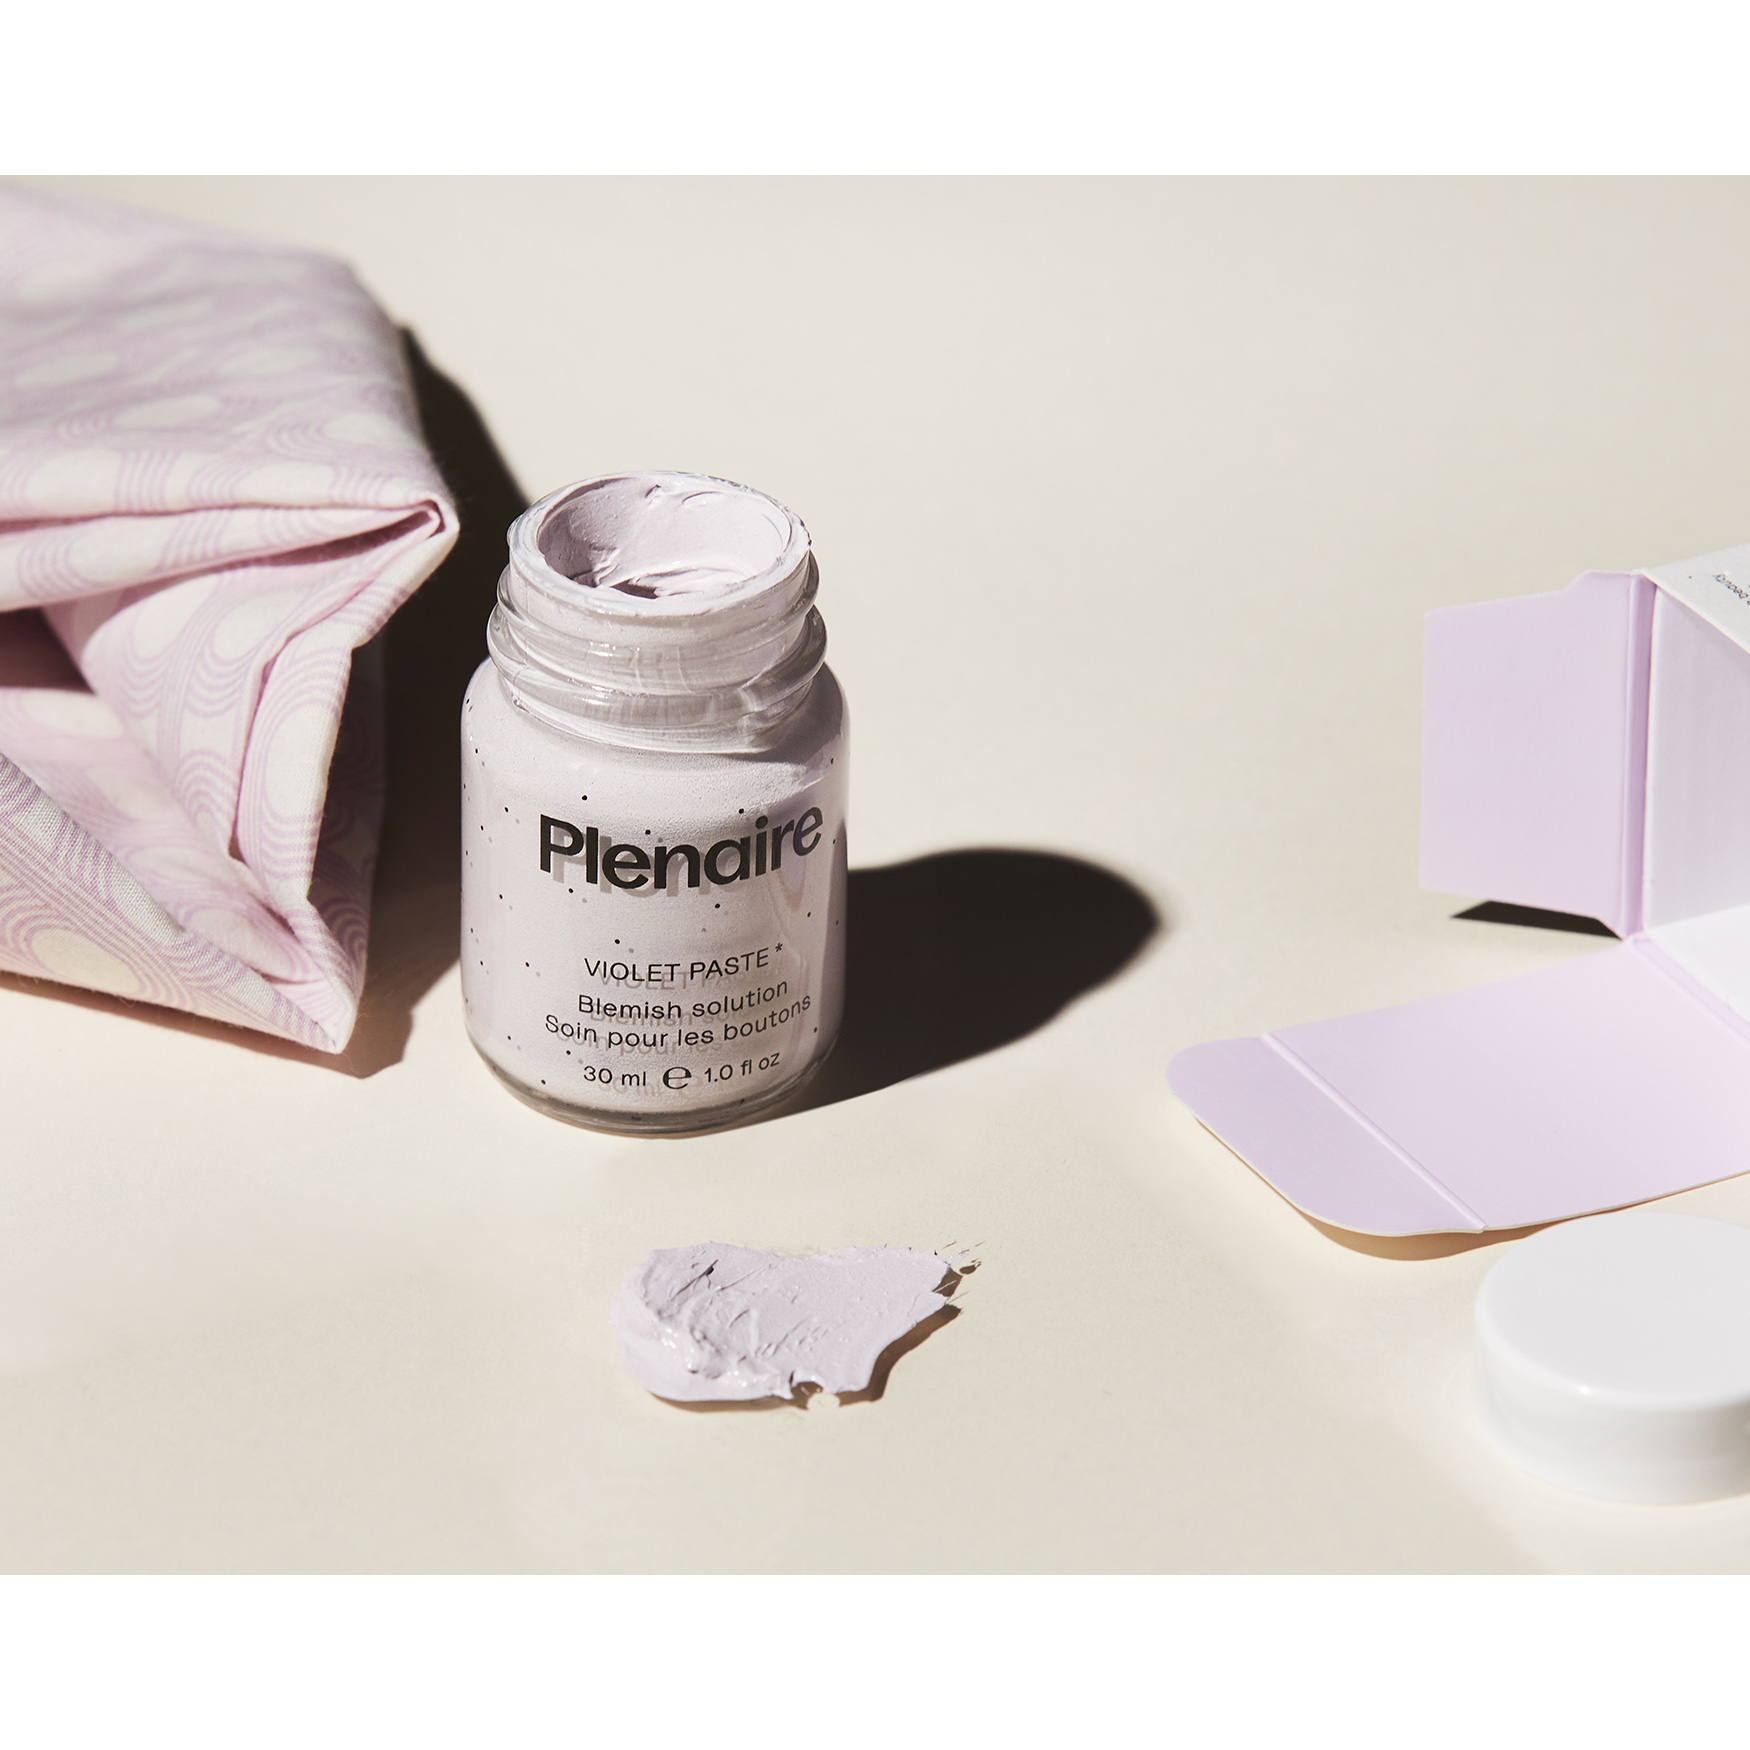 Plenaire Violet Paste Overnight Blemish Treatment | Space NK